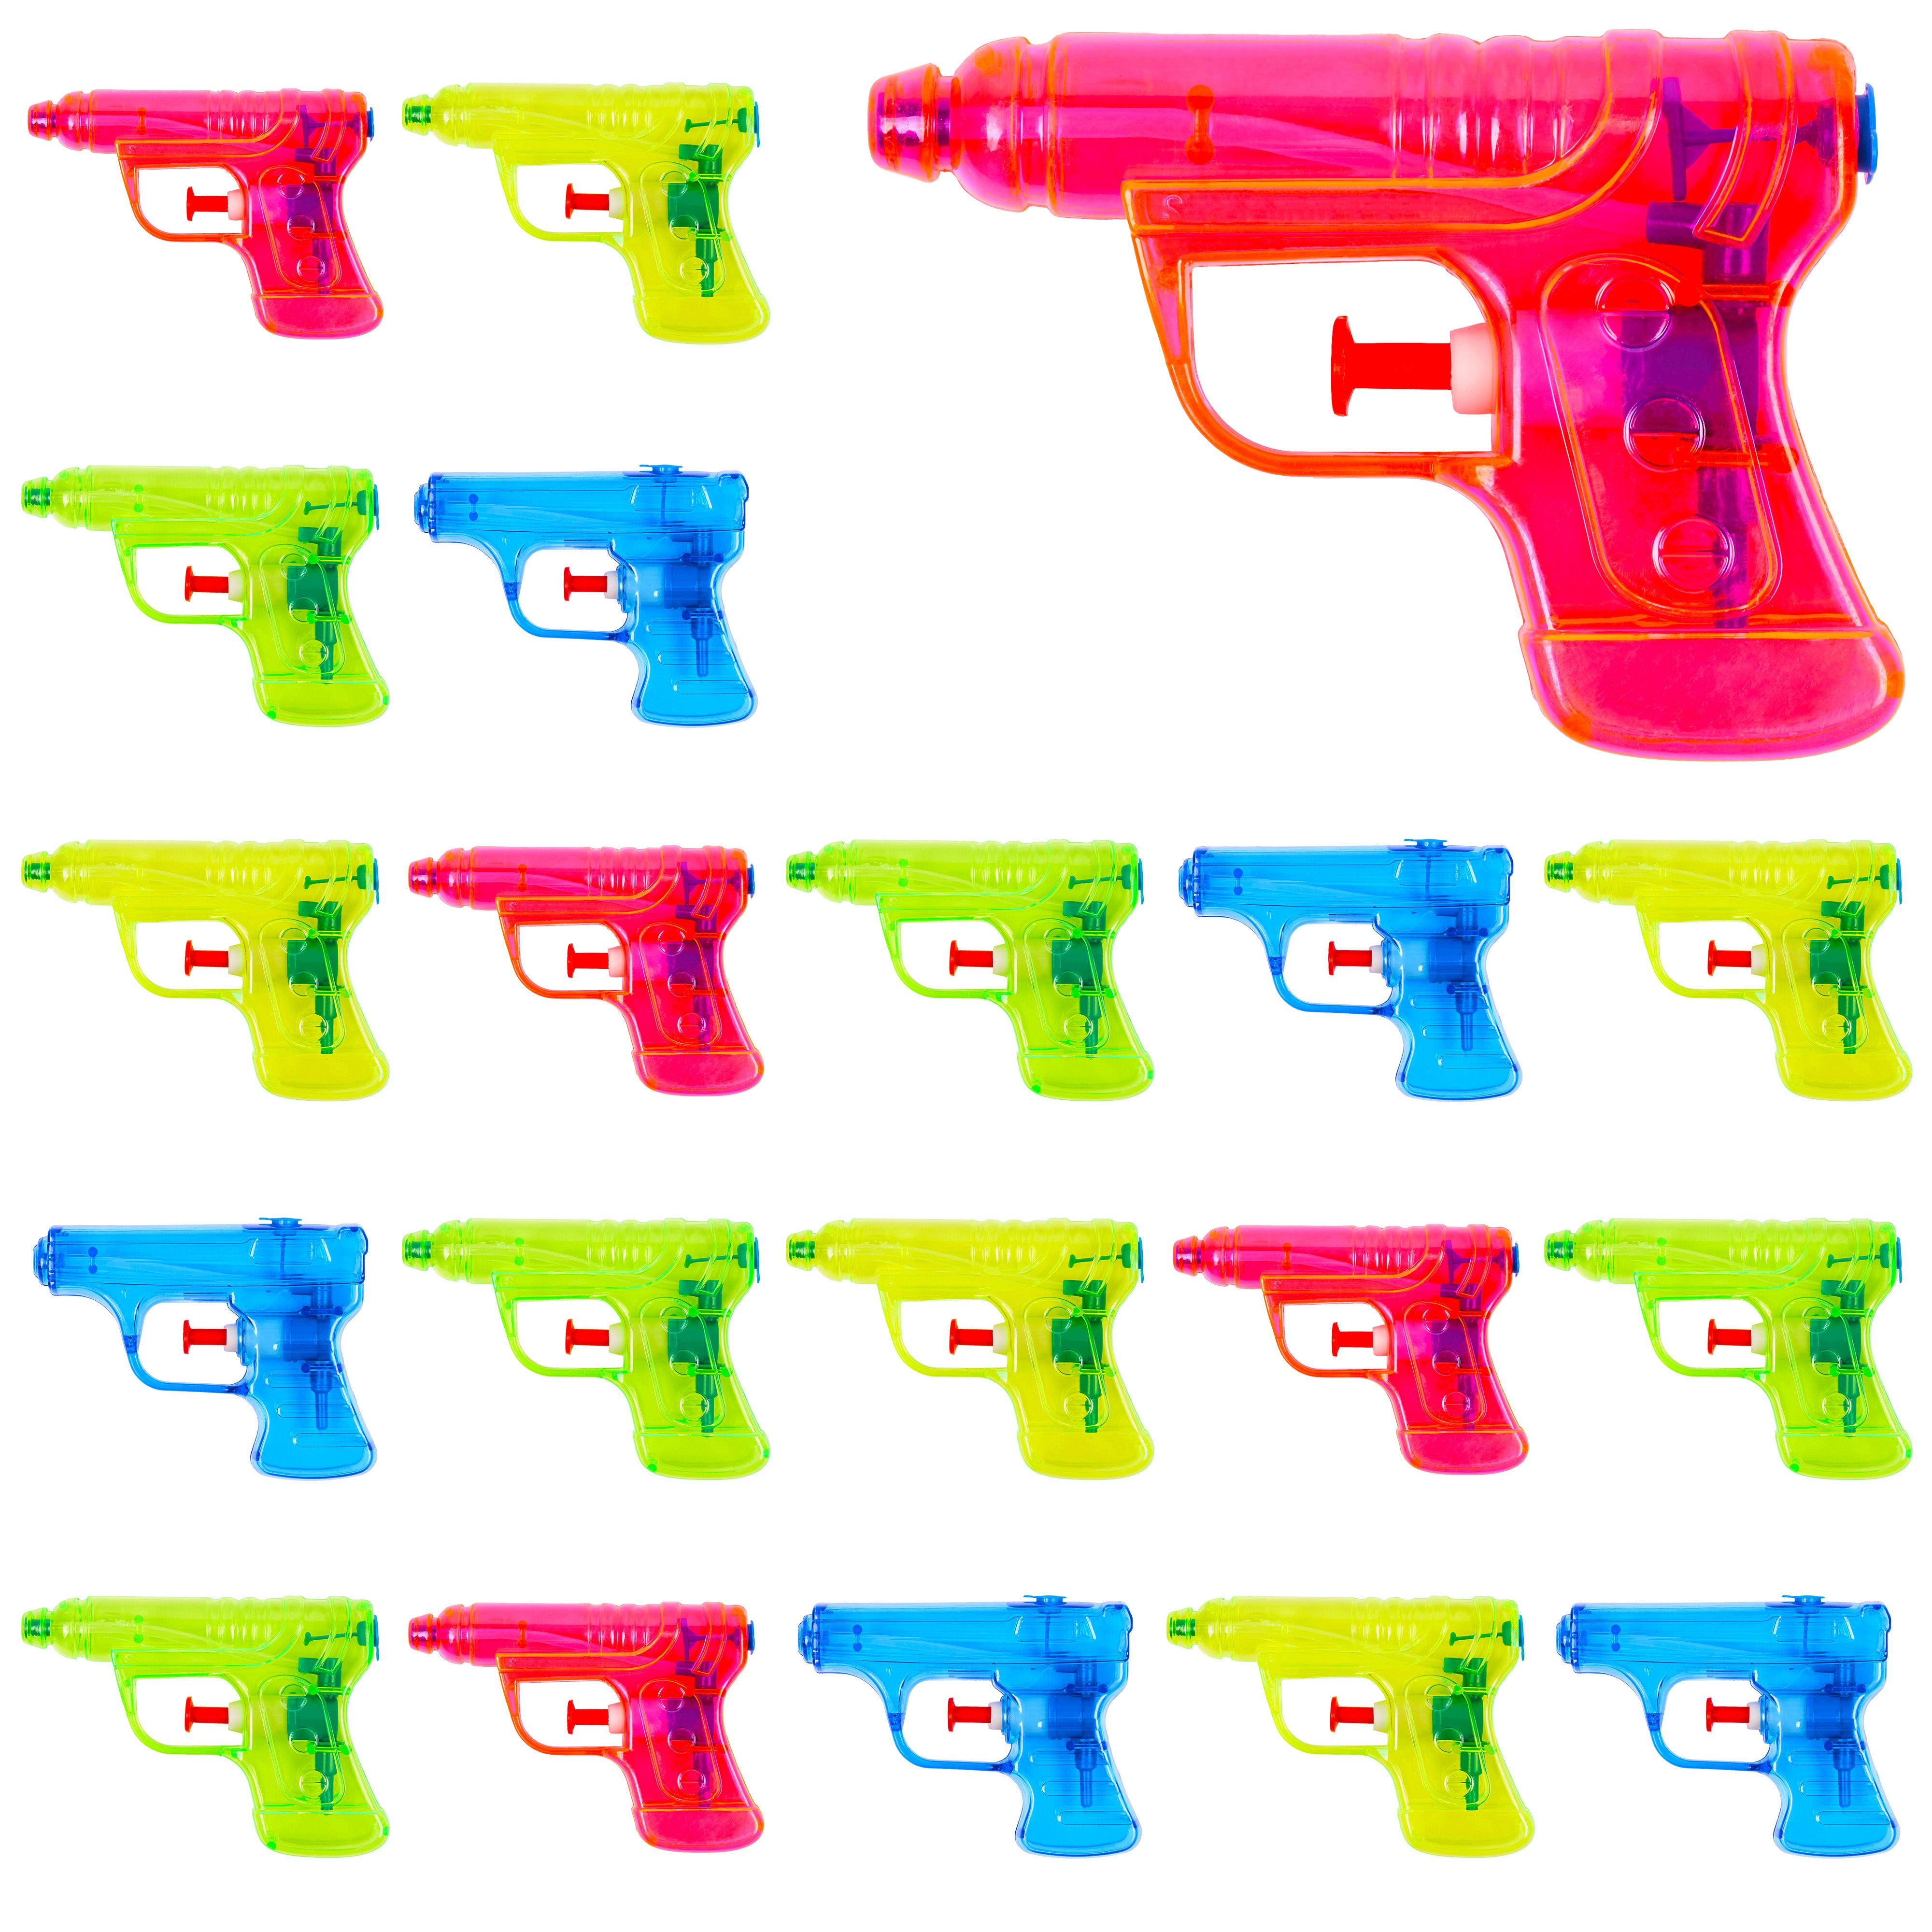 20 Mini Water Guns